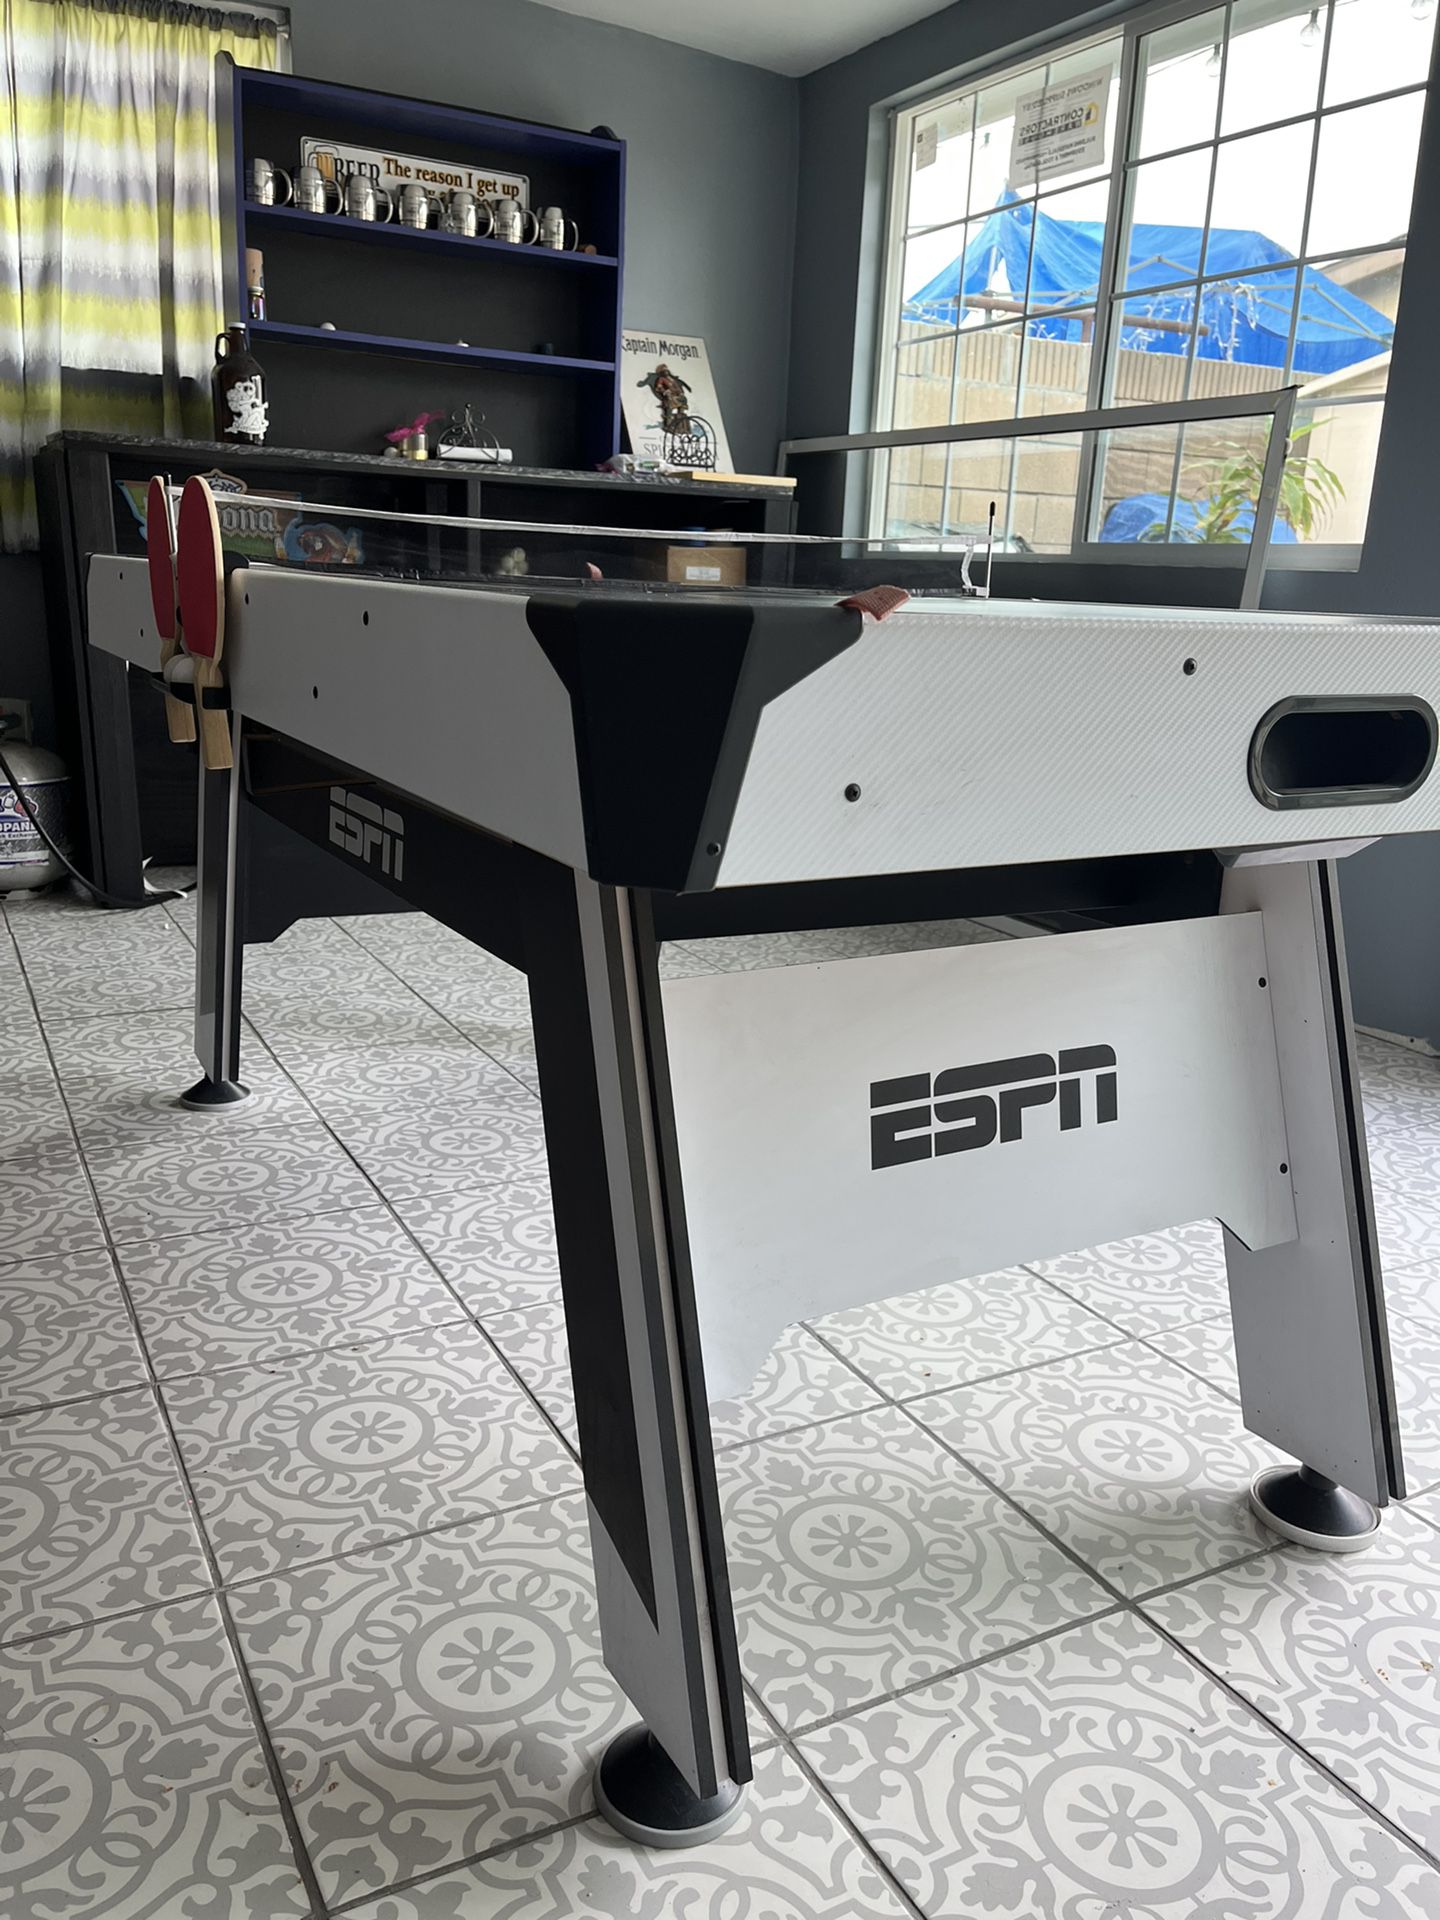 ESPN Table Tennis/ Air Hockey Table